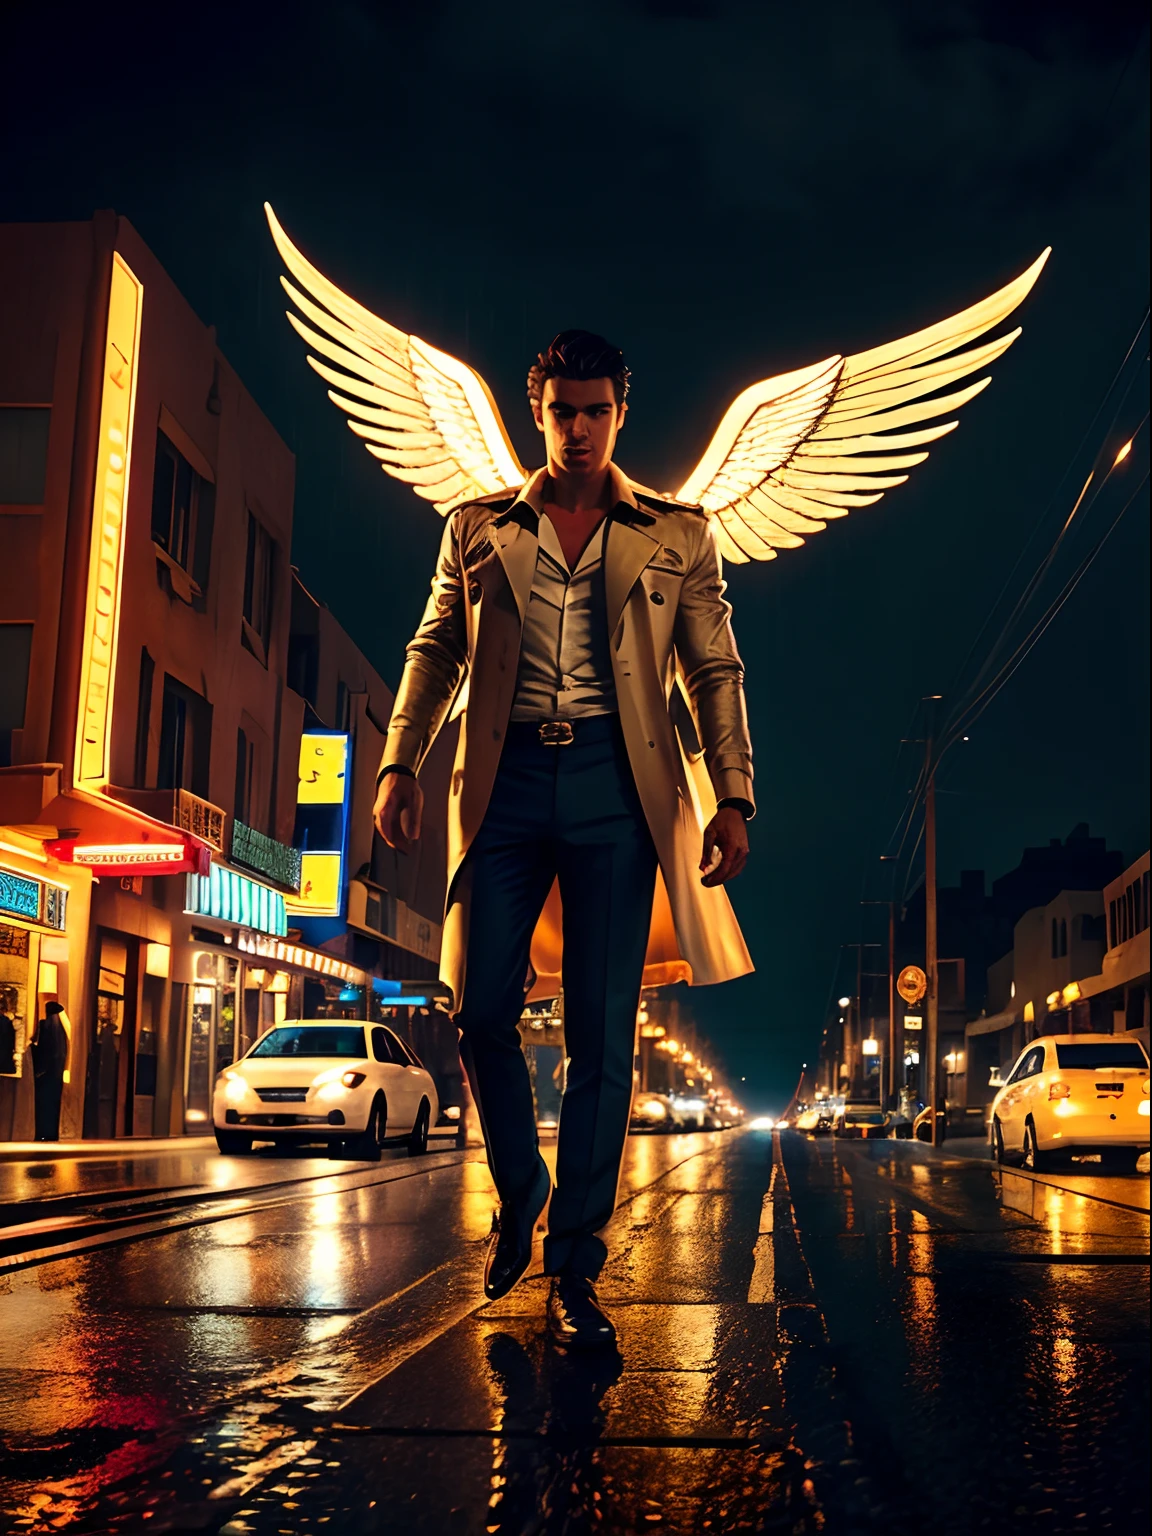 Filmische Aufnahme eines himmlisch schönen geflügelten männlichen Engels, auf einer verlassenen Stadtstraße, In einer regnerischen Nacht, filmische Beleuchtung, Ansicht von unten, lebendige Farbpalette, Hoher Kontrast, fotografiert von Guy Aroch